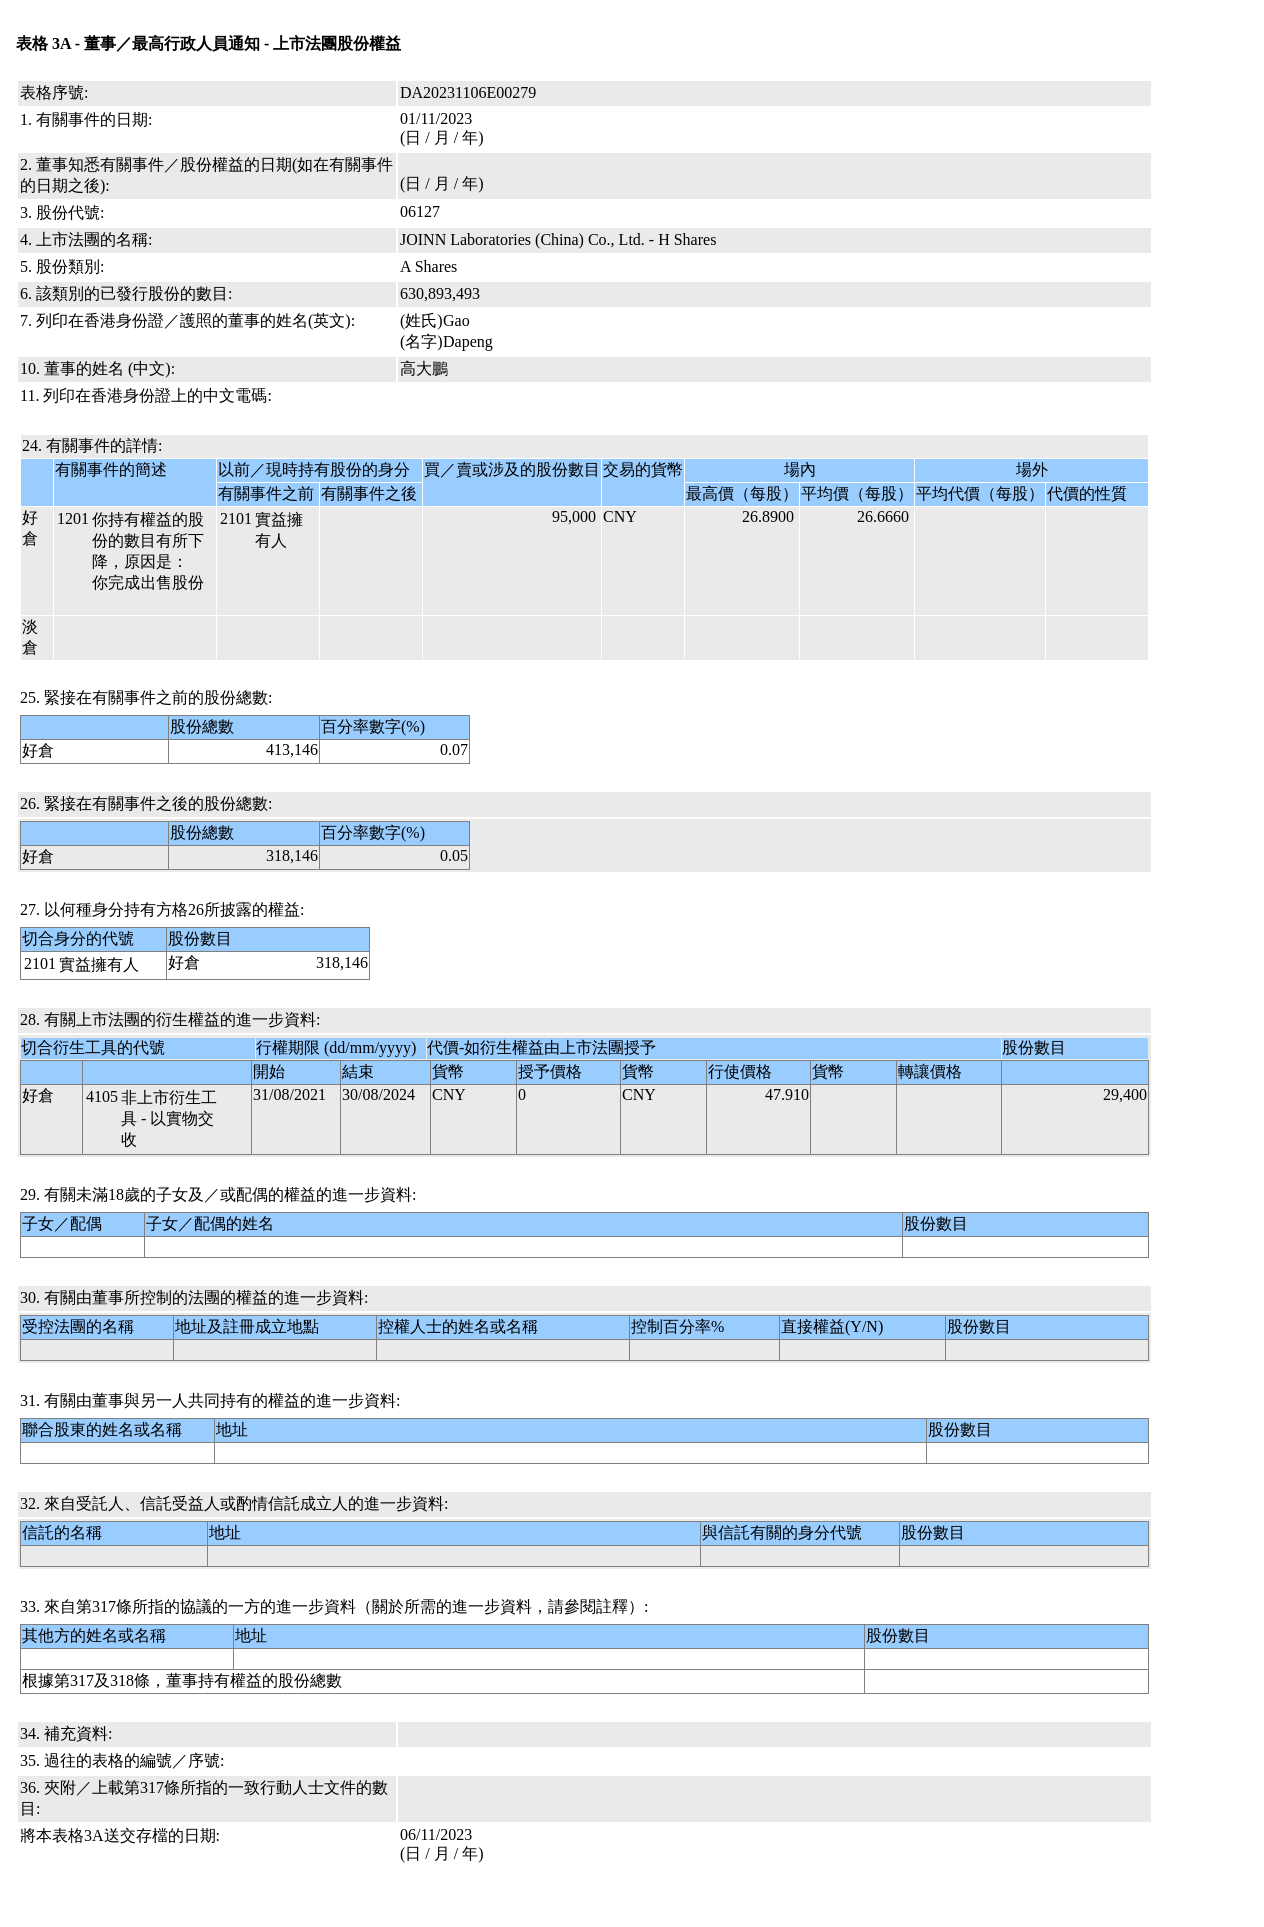 高大鹏售出昭衍新药(06127.HK)9.5万股A股股份，价值约253.33万元